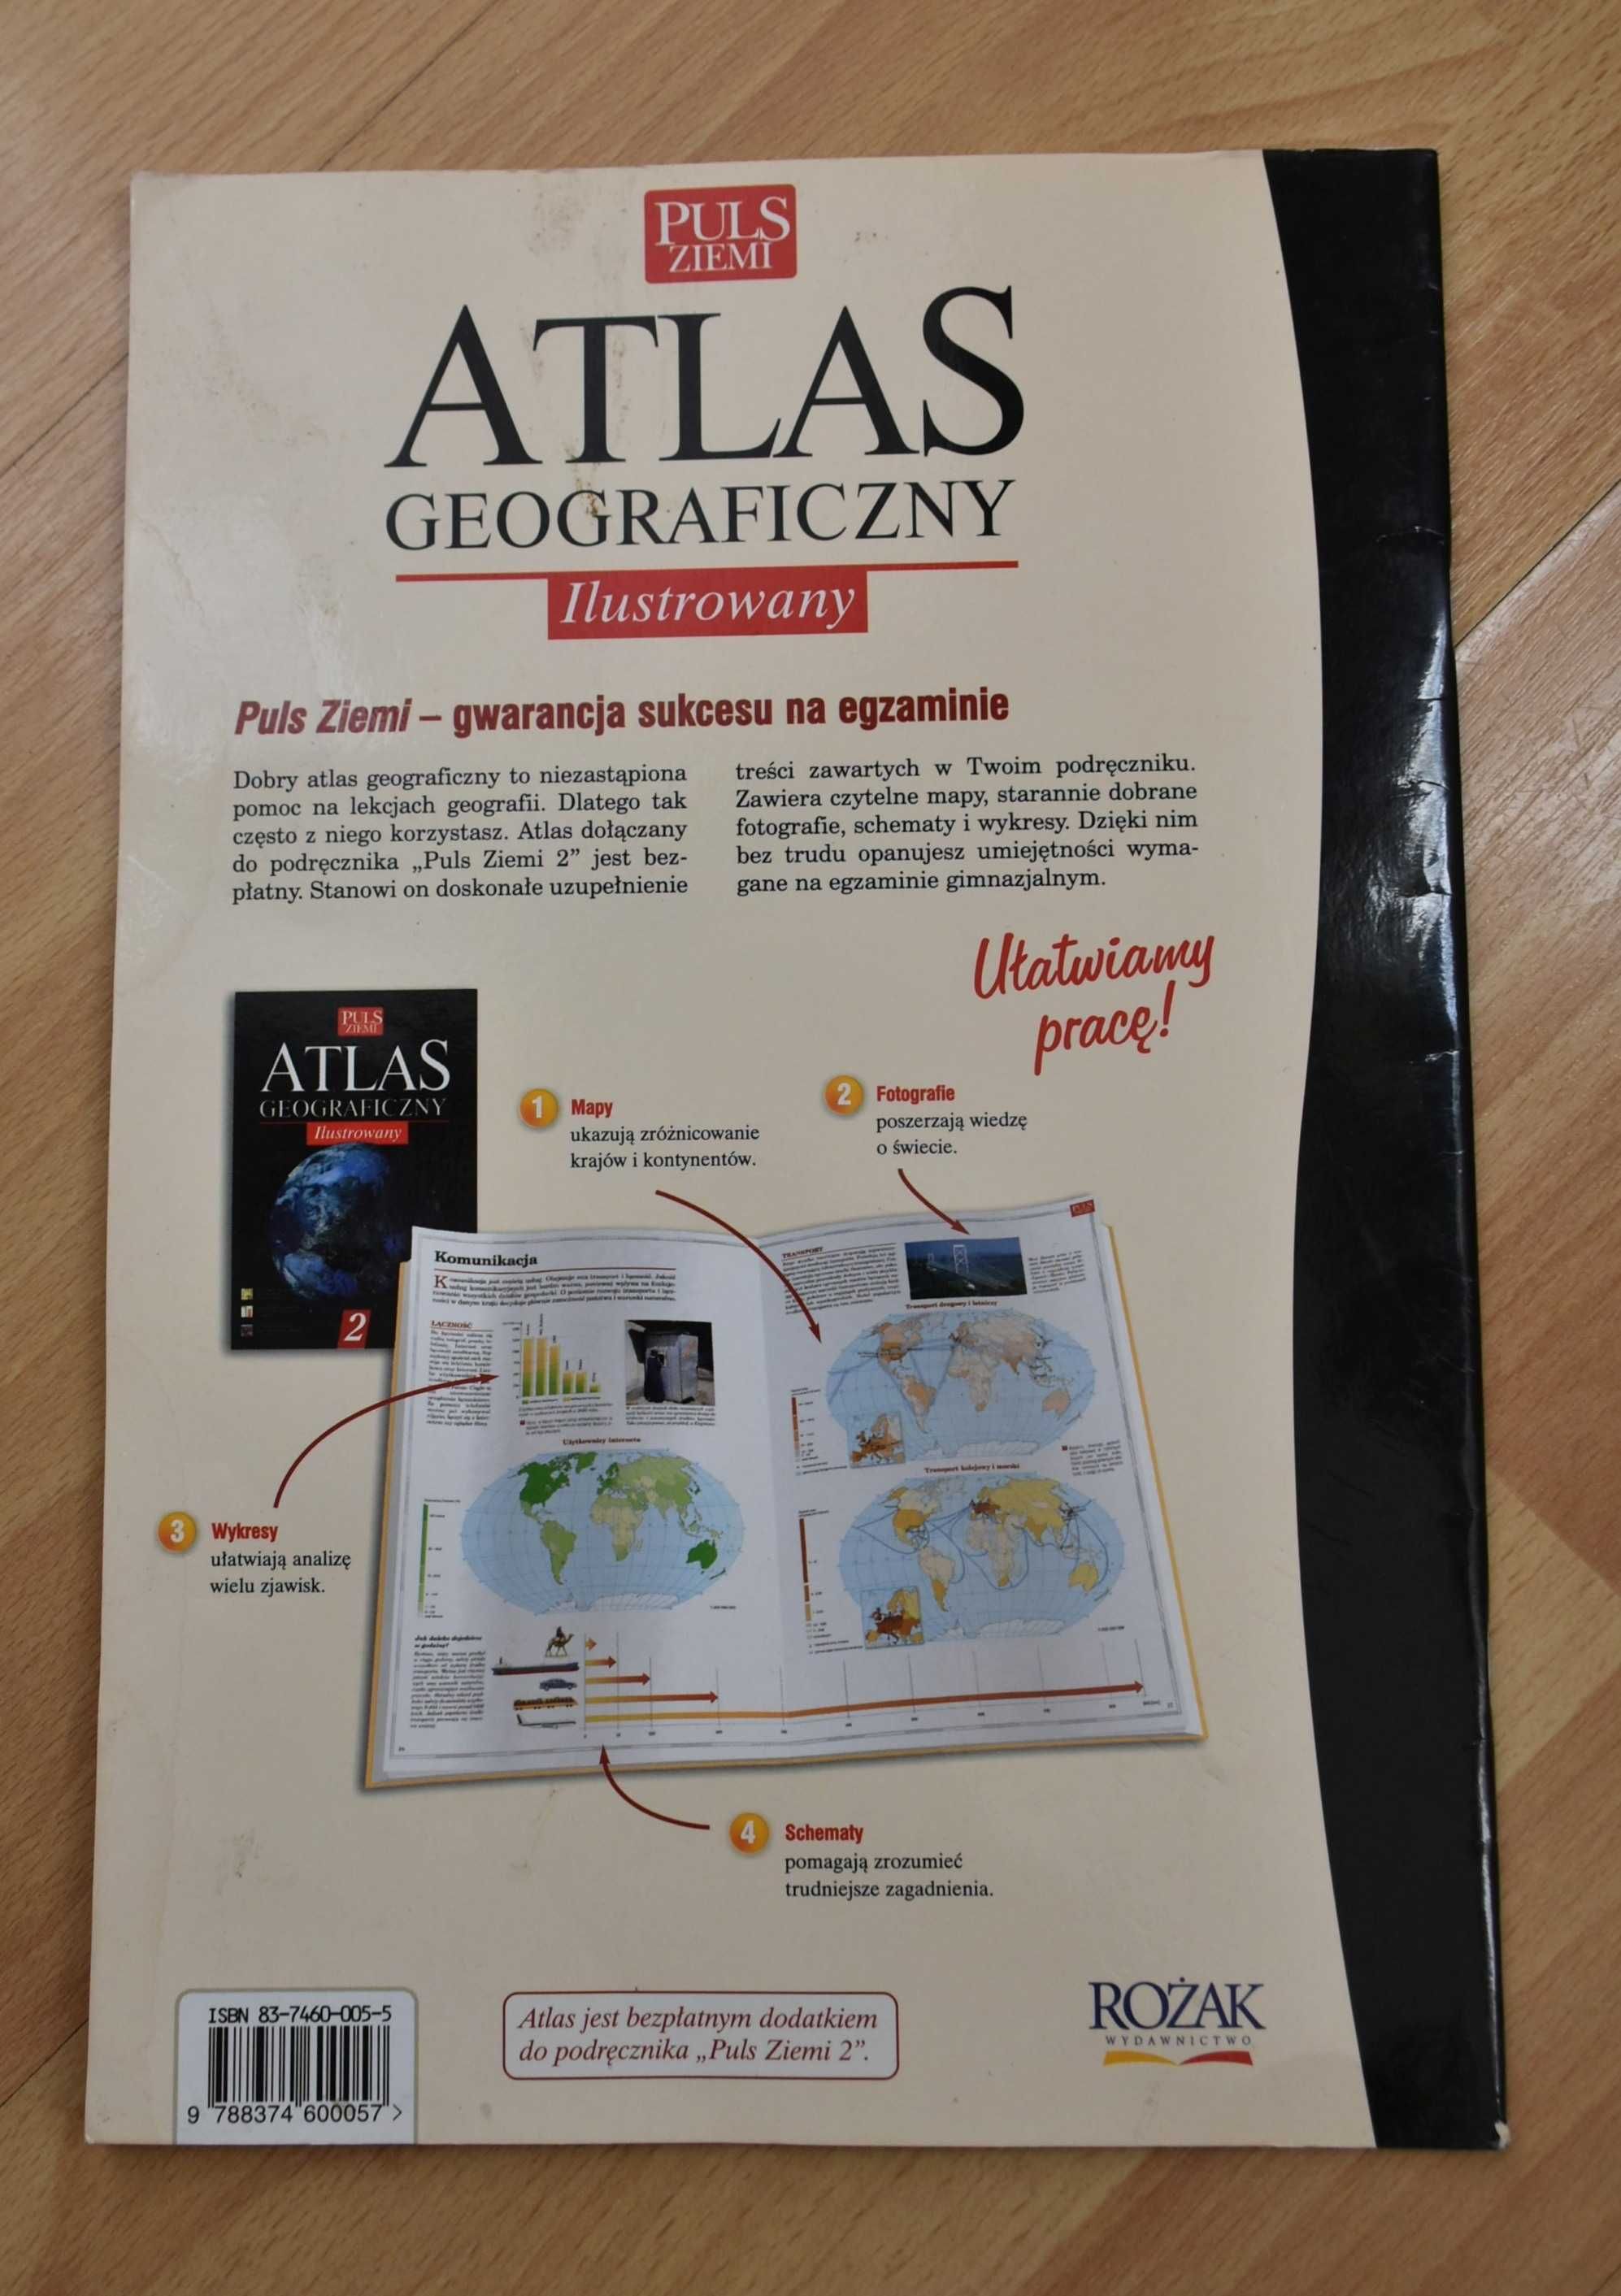 Atlas geograficzny ilustrowany, Puls Ziemi, kolorowe zdjęcia i wykresy